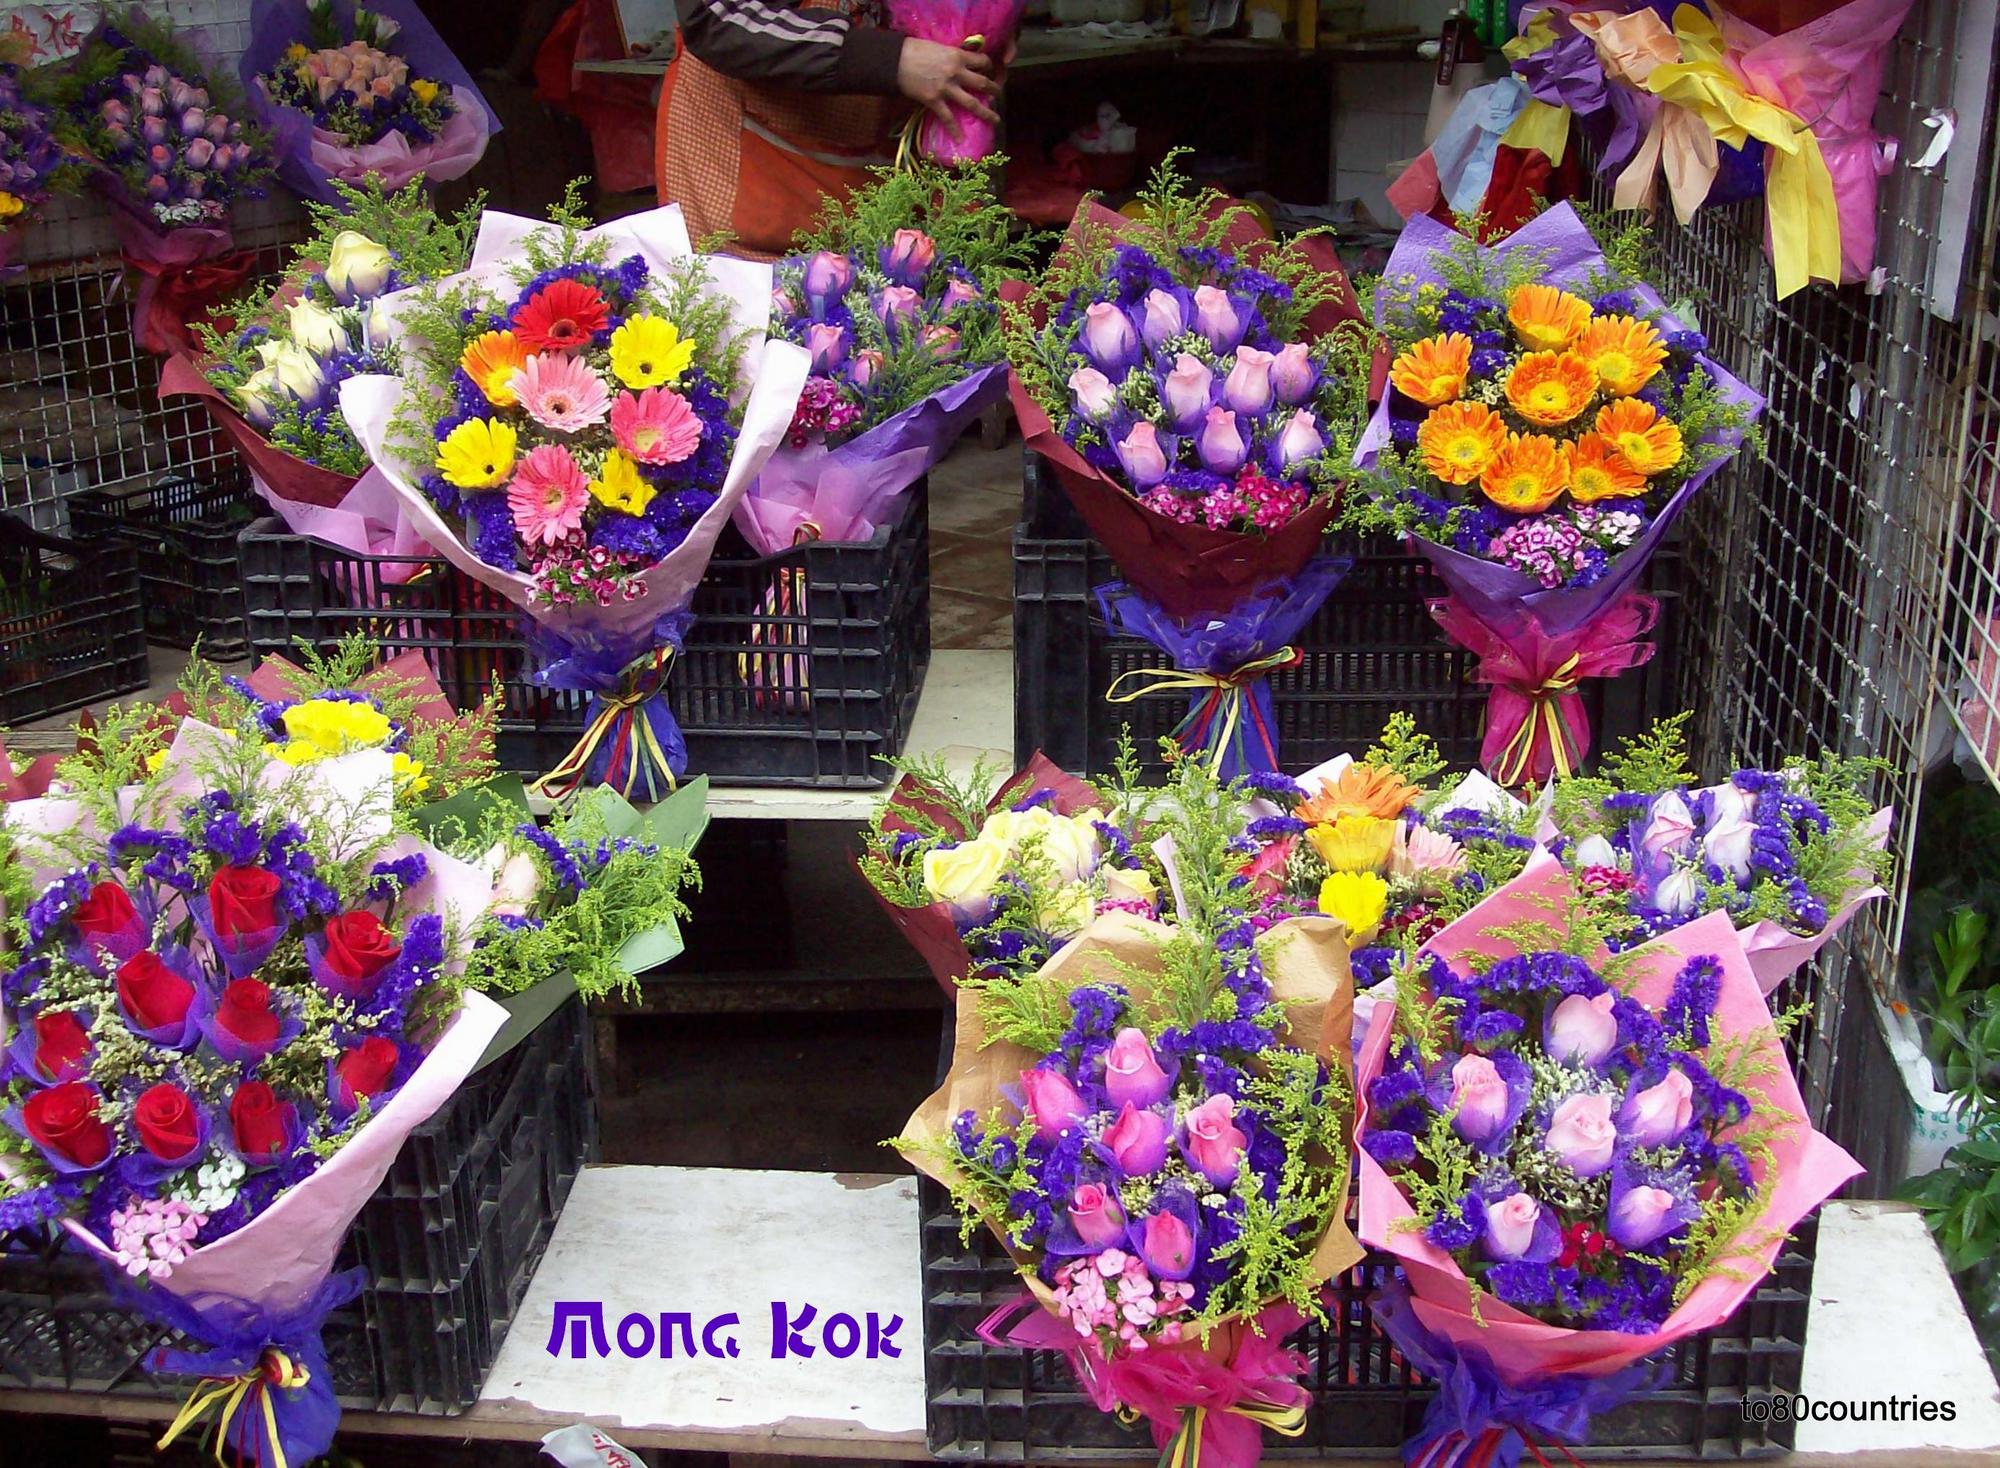 Blumenmarkt in Mongkok